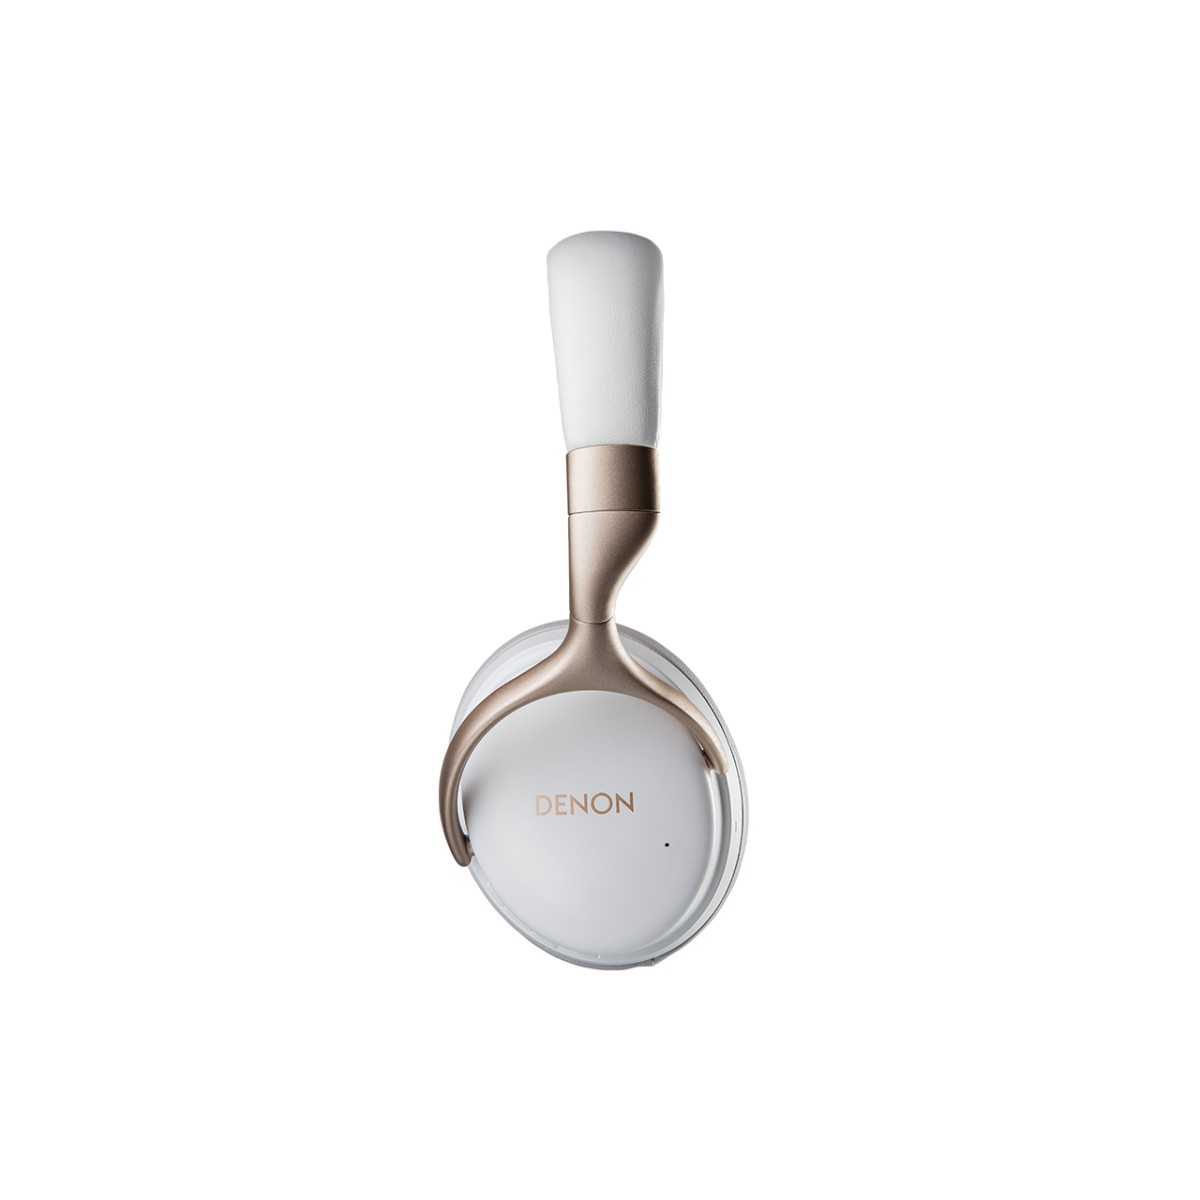 Hier sehen Sie den Artikel AH-GC30 Headphone white aus der Kategorie Réduction de bruit. Dieser Artikel ist erhältlich bei cebrands.ch